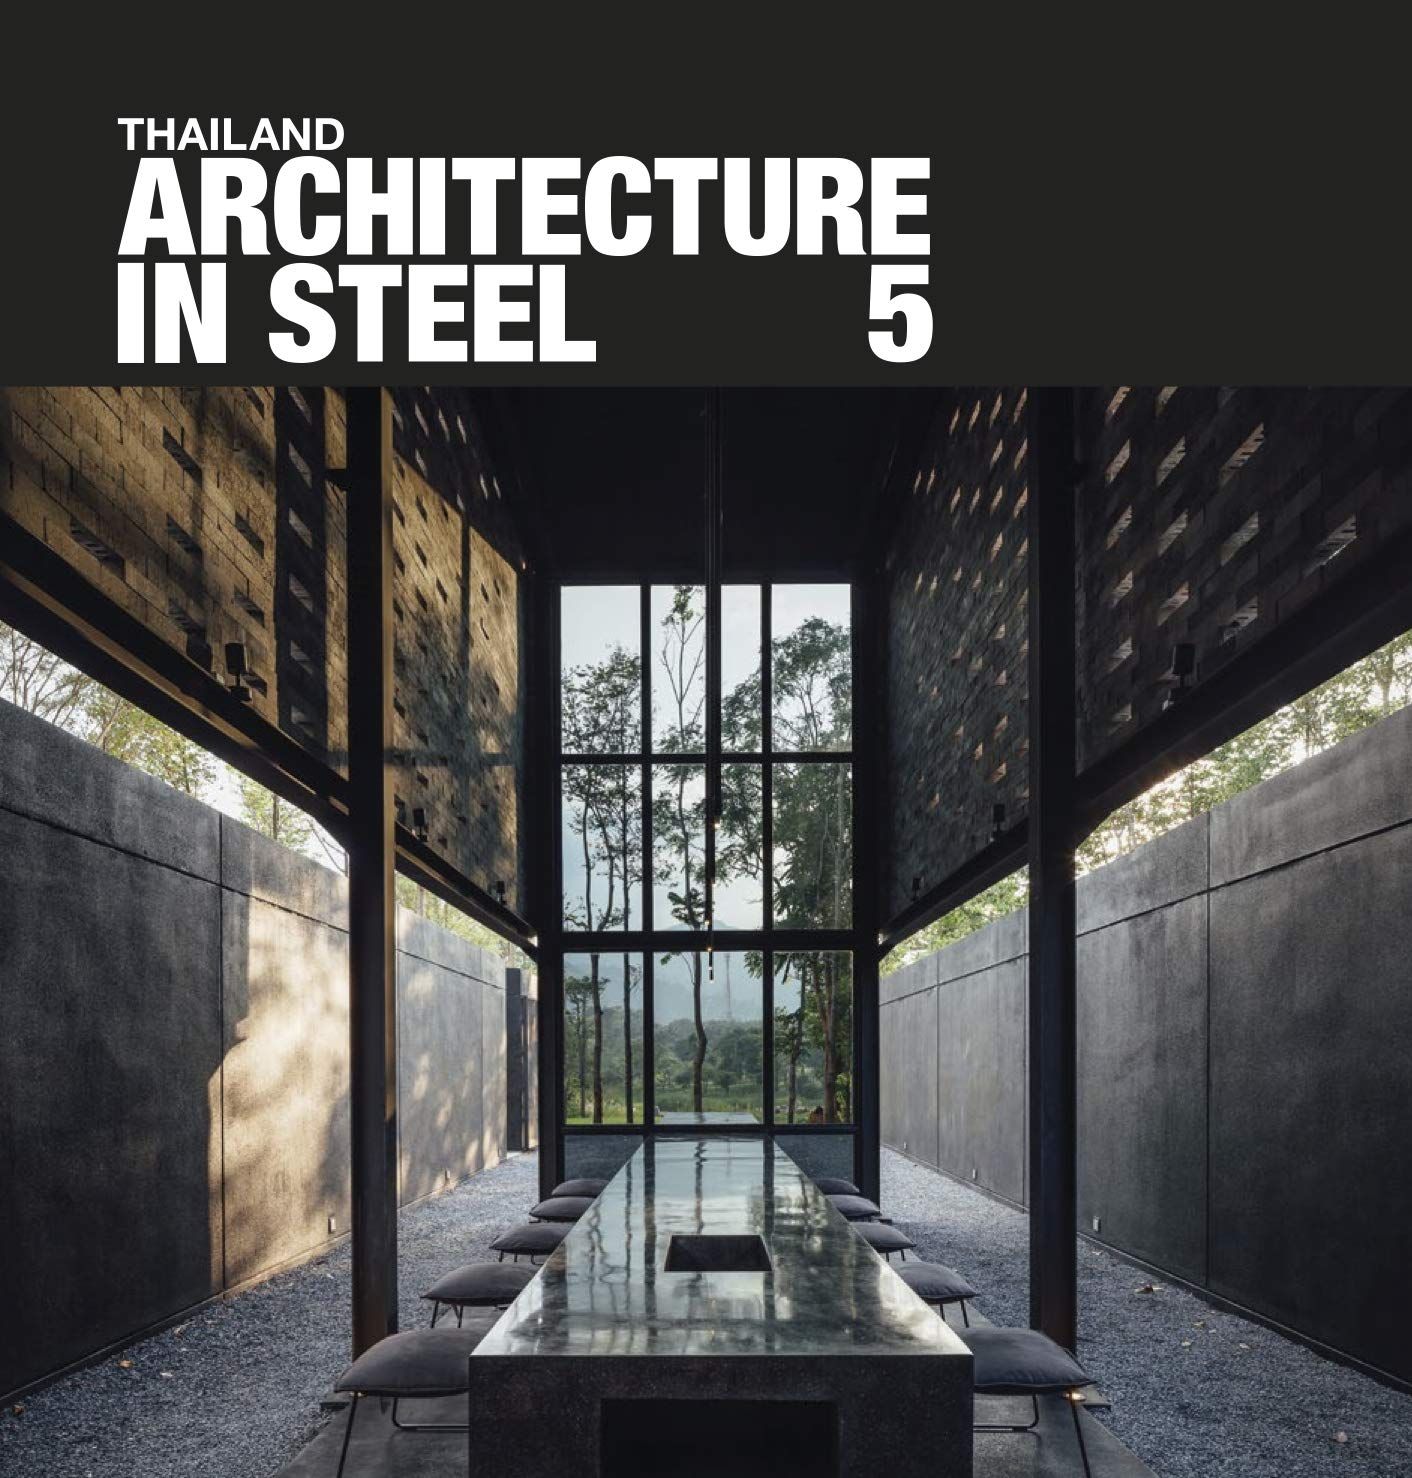  Thailand: Architecture in Steel 5_ED. Nithi Sthapitanonda_9786167800820_Li-Zenn Publishing Limited 